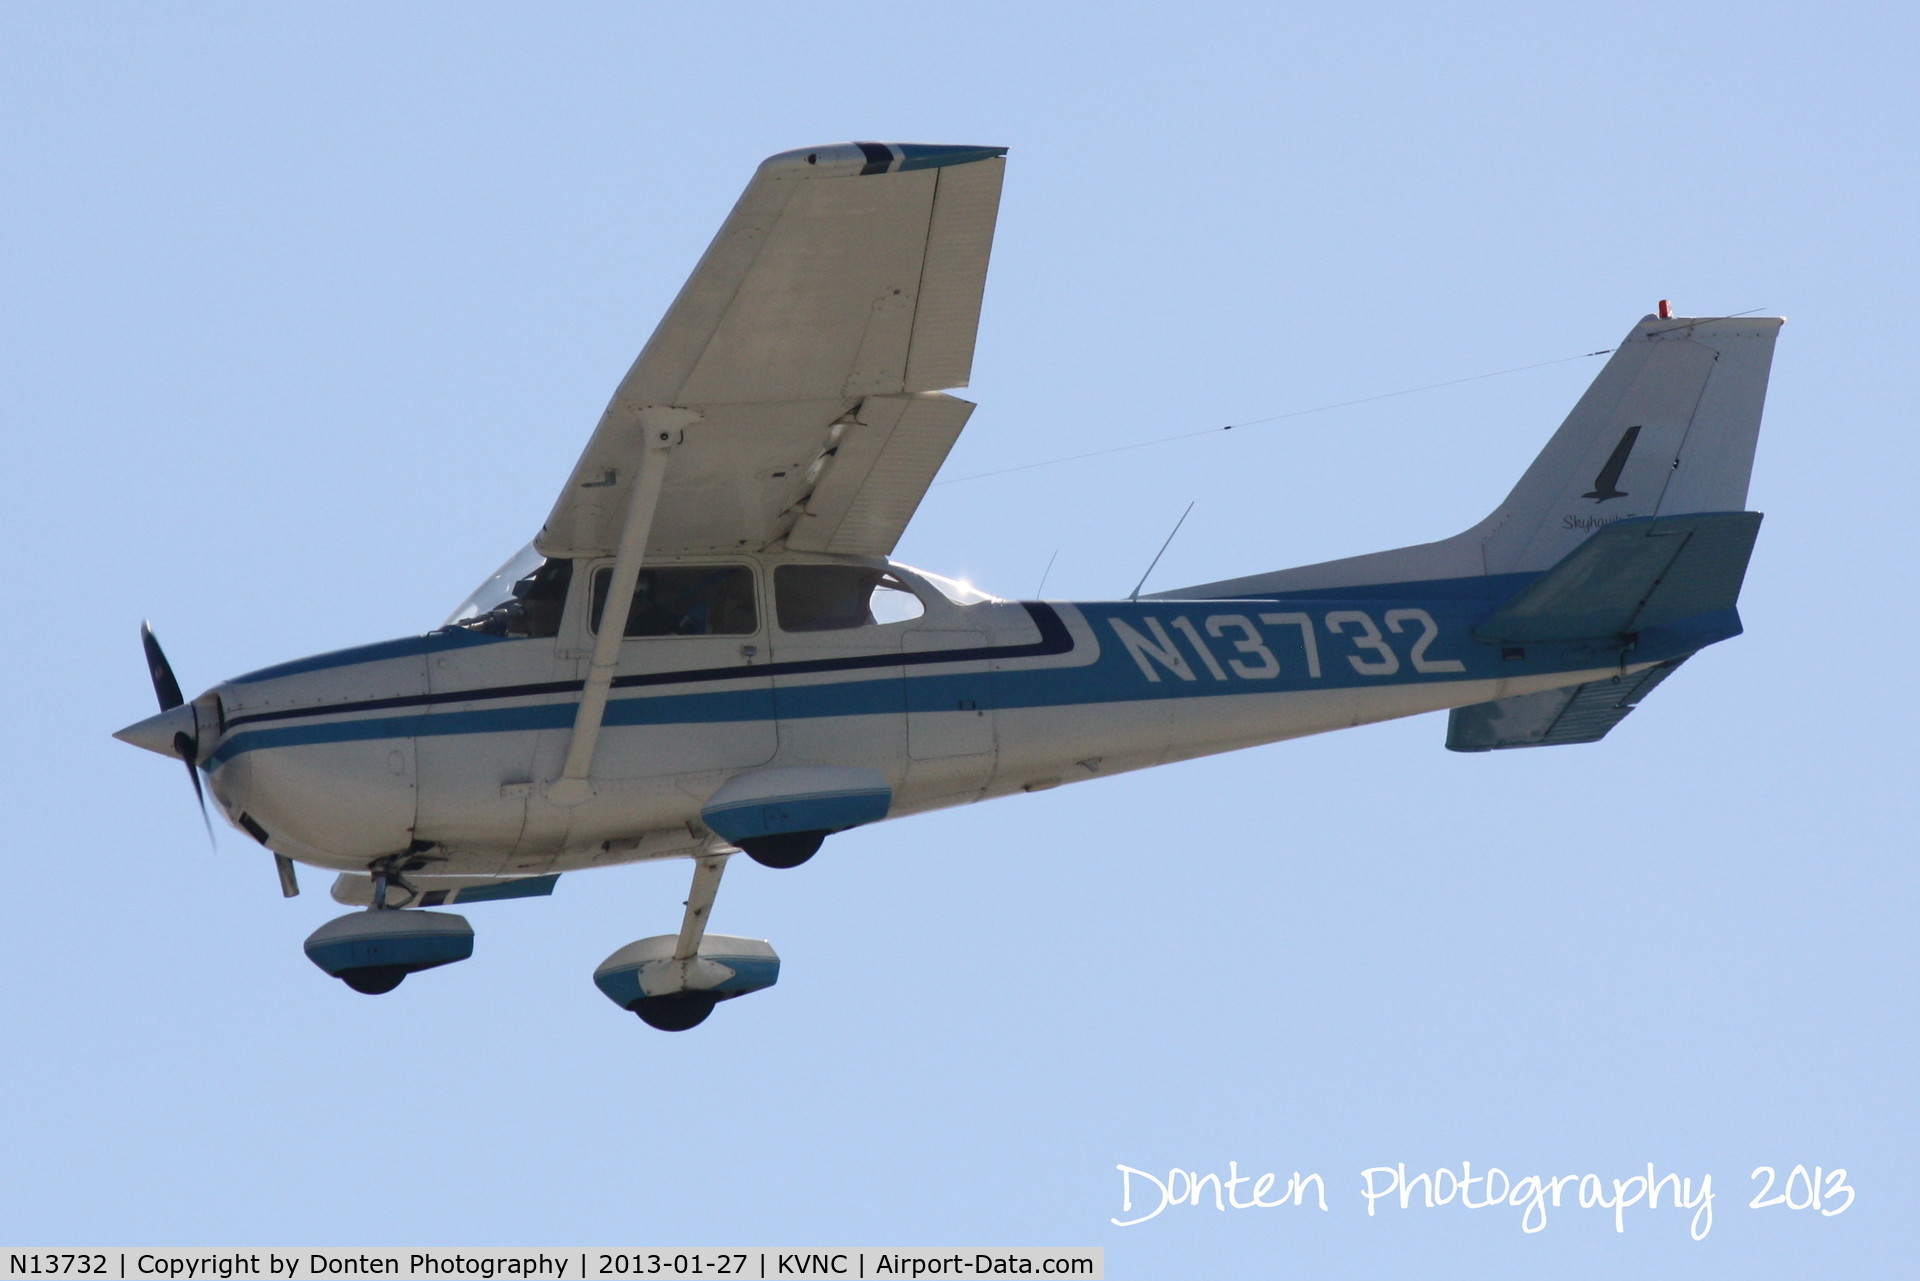 N13732, 1974 Cessna 172M C/N 17262978, Cessna Skyhawk (N13732) flies over Brohard Beach on approach to Runway 5 at Venice Municipal Airport